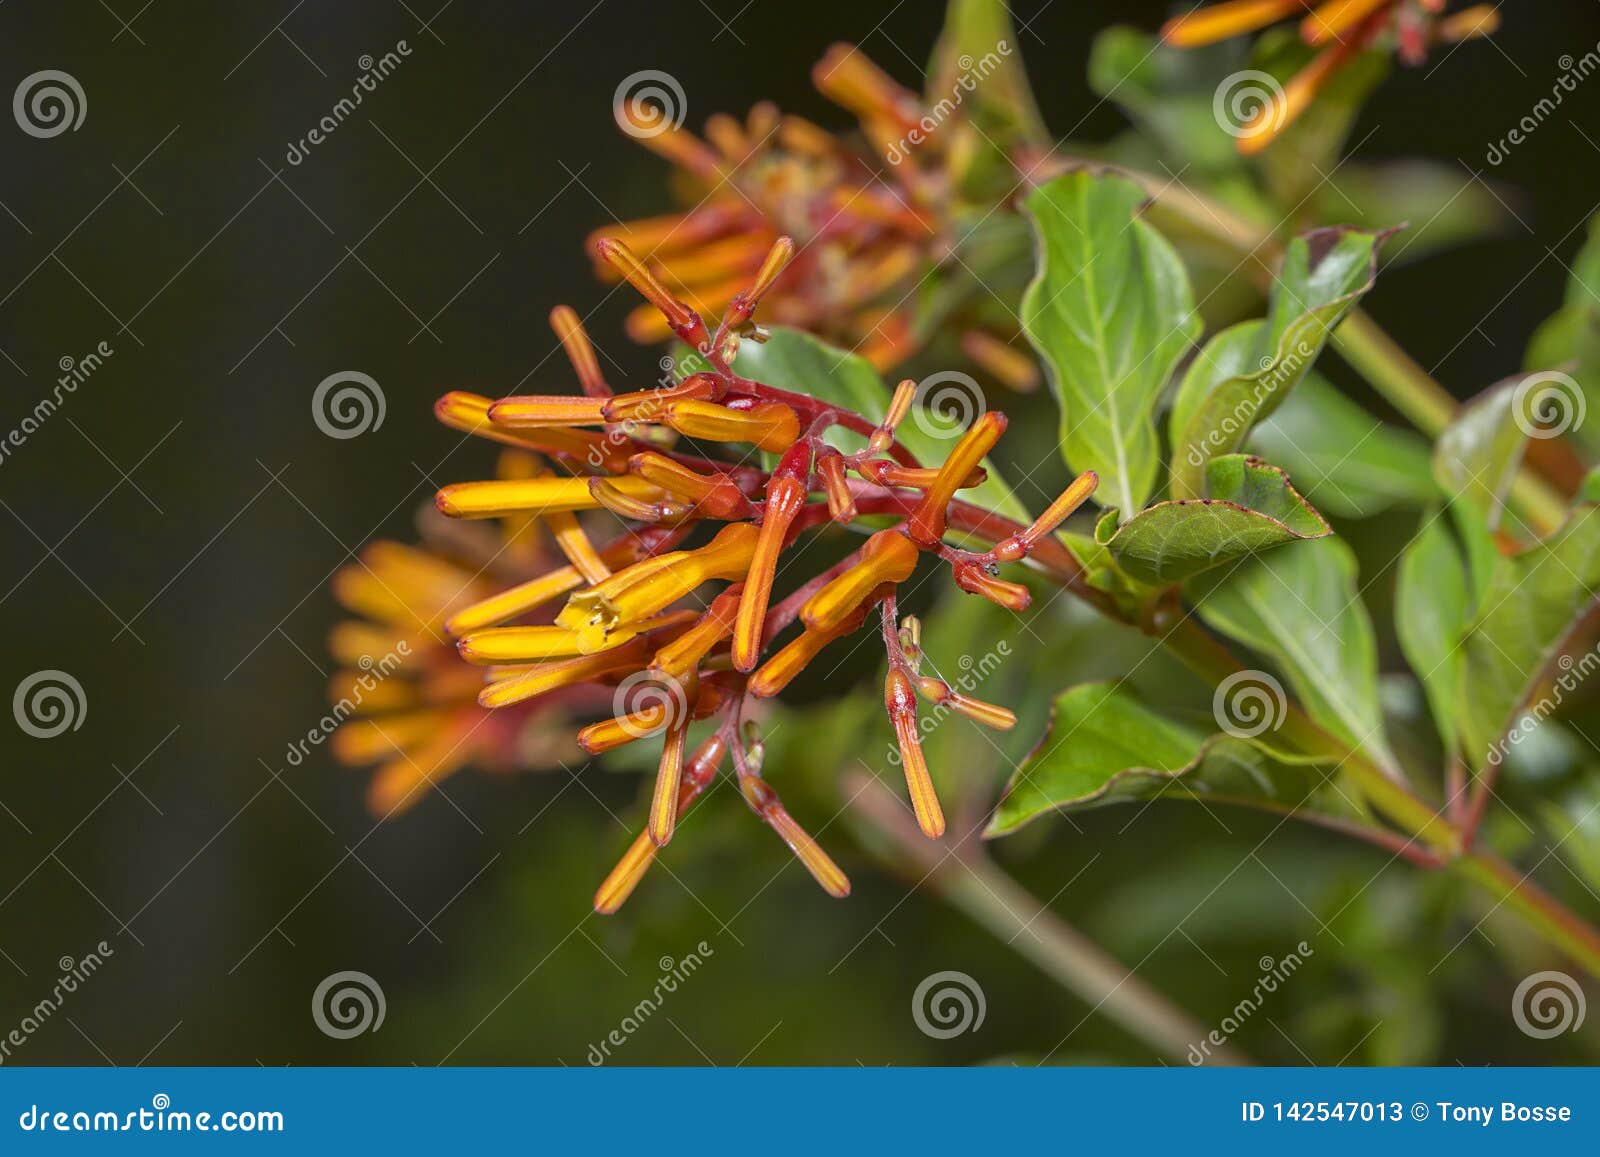 dwarf hummingbird bush